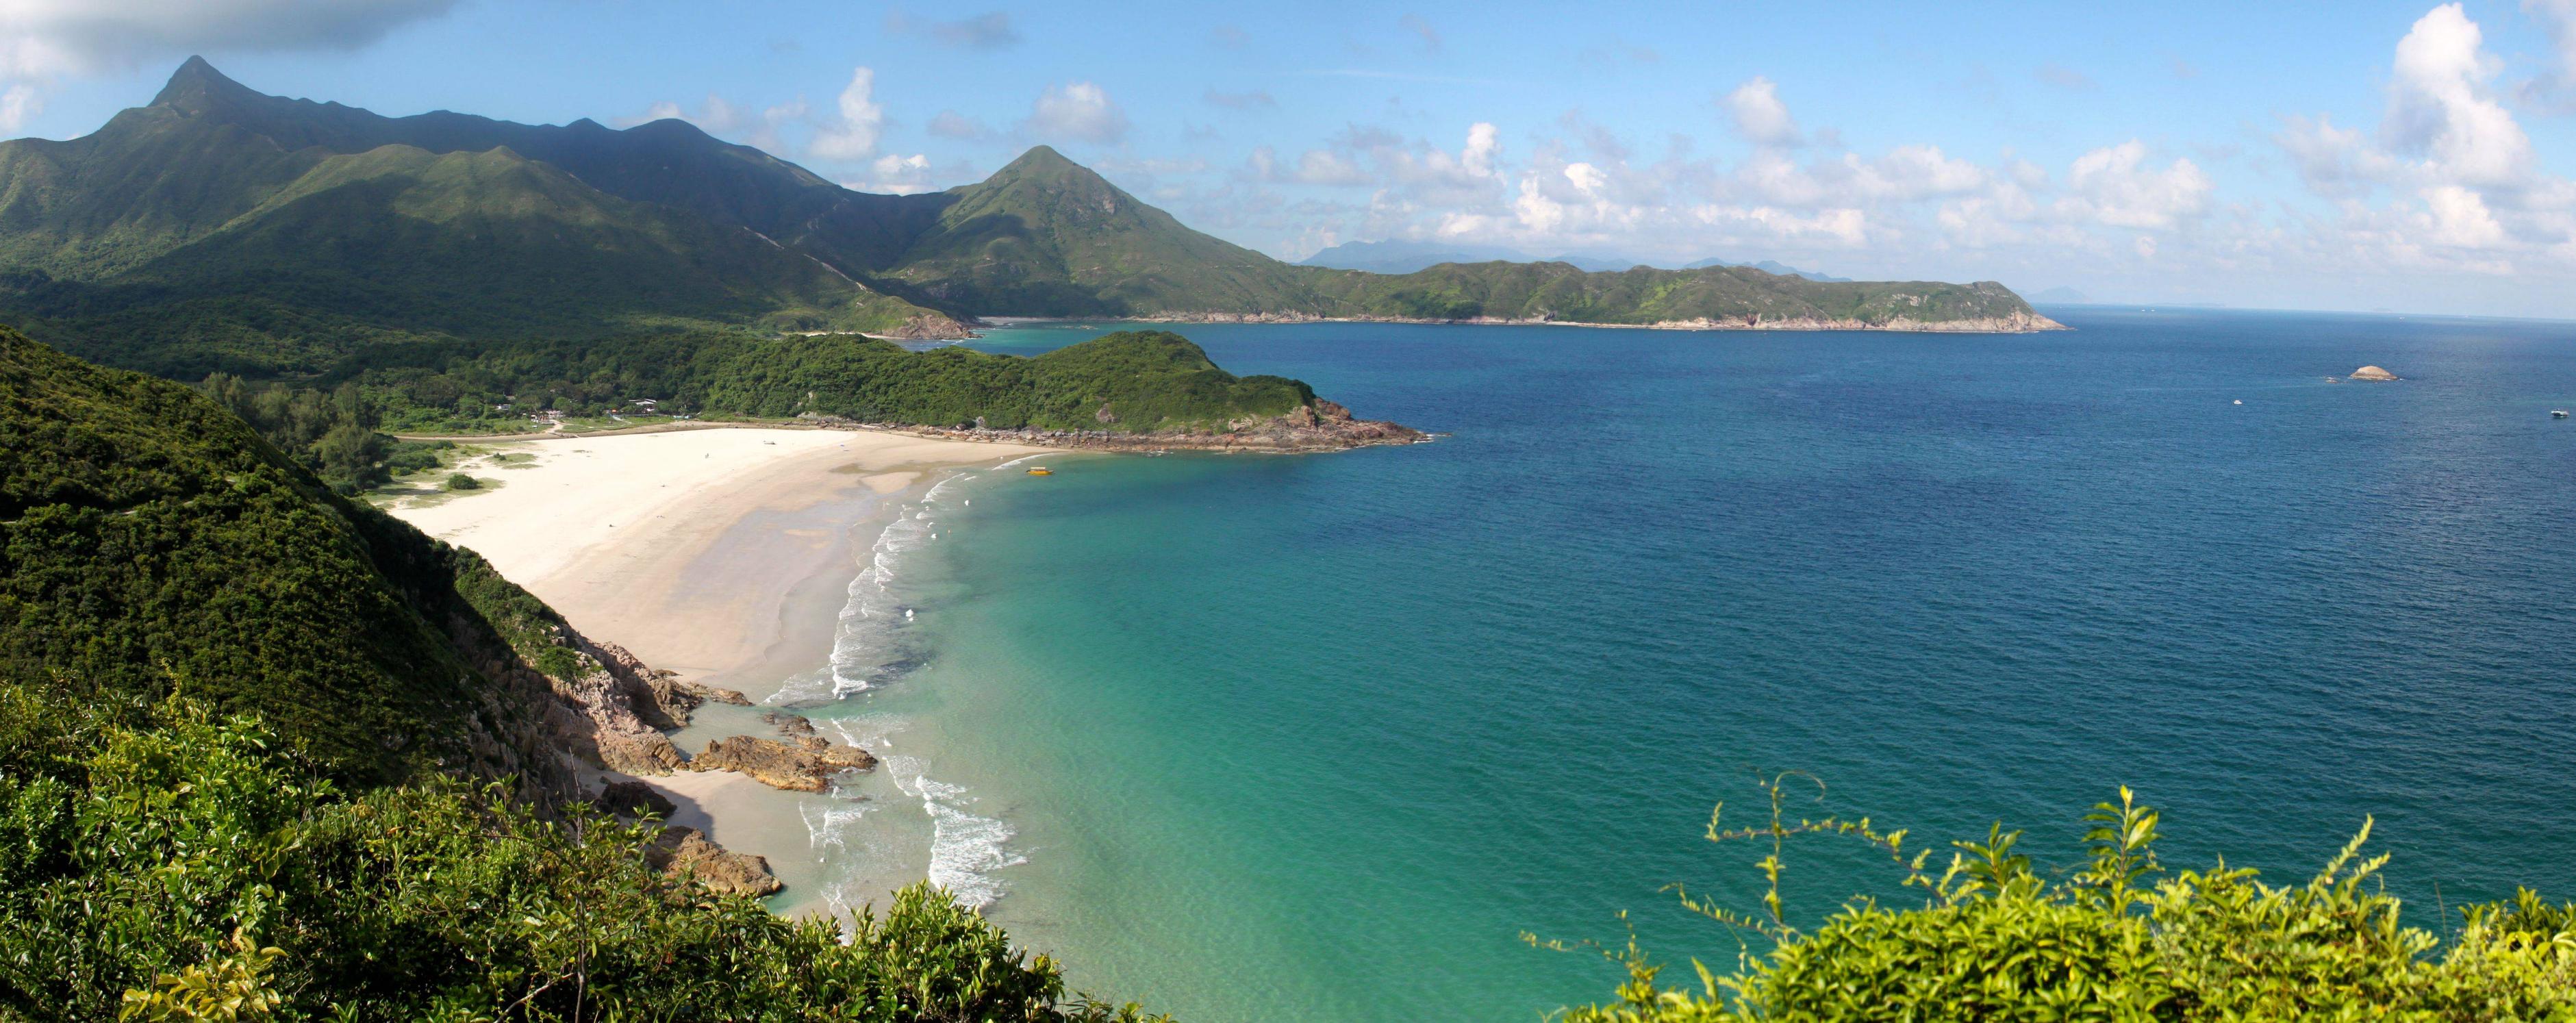 Những bãi biển nổi tiếng của Hồng Kông mà bạn nên đến trong mùa hè này